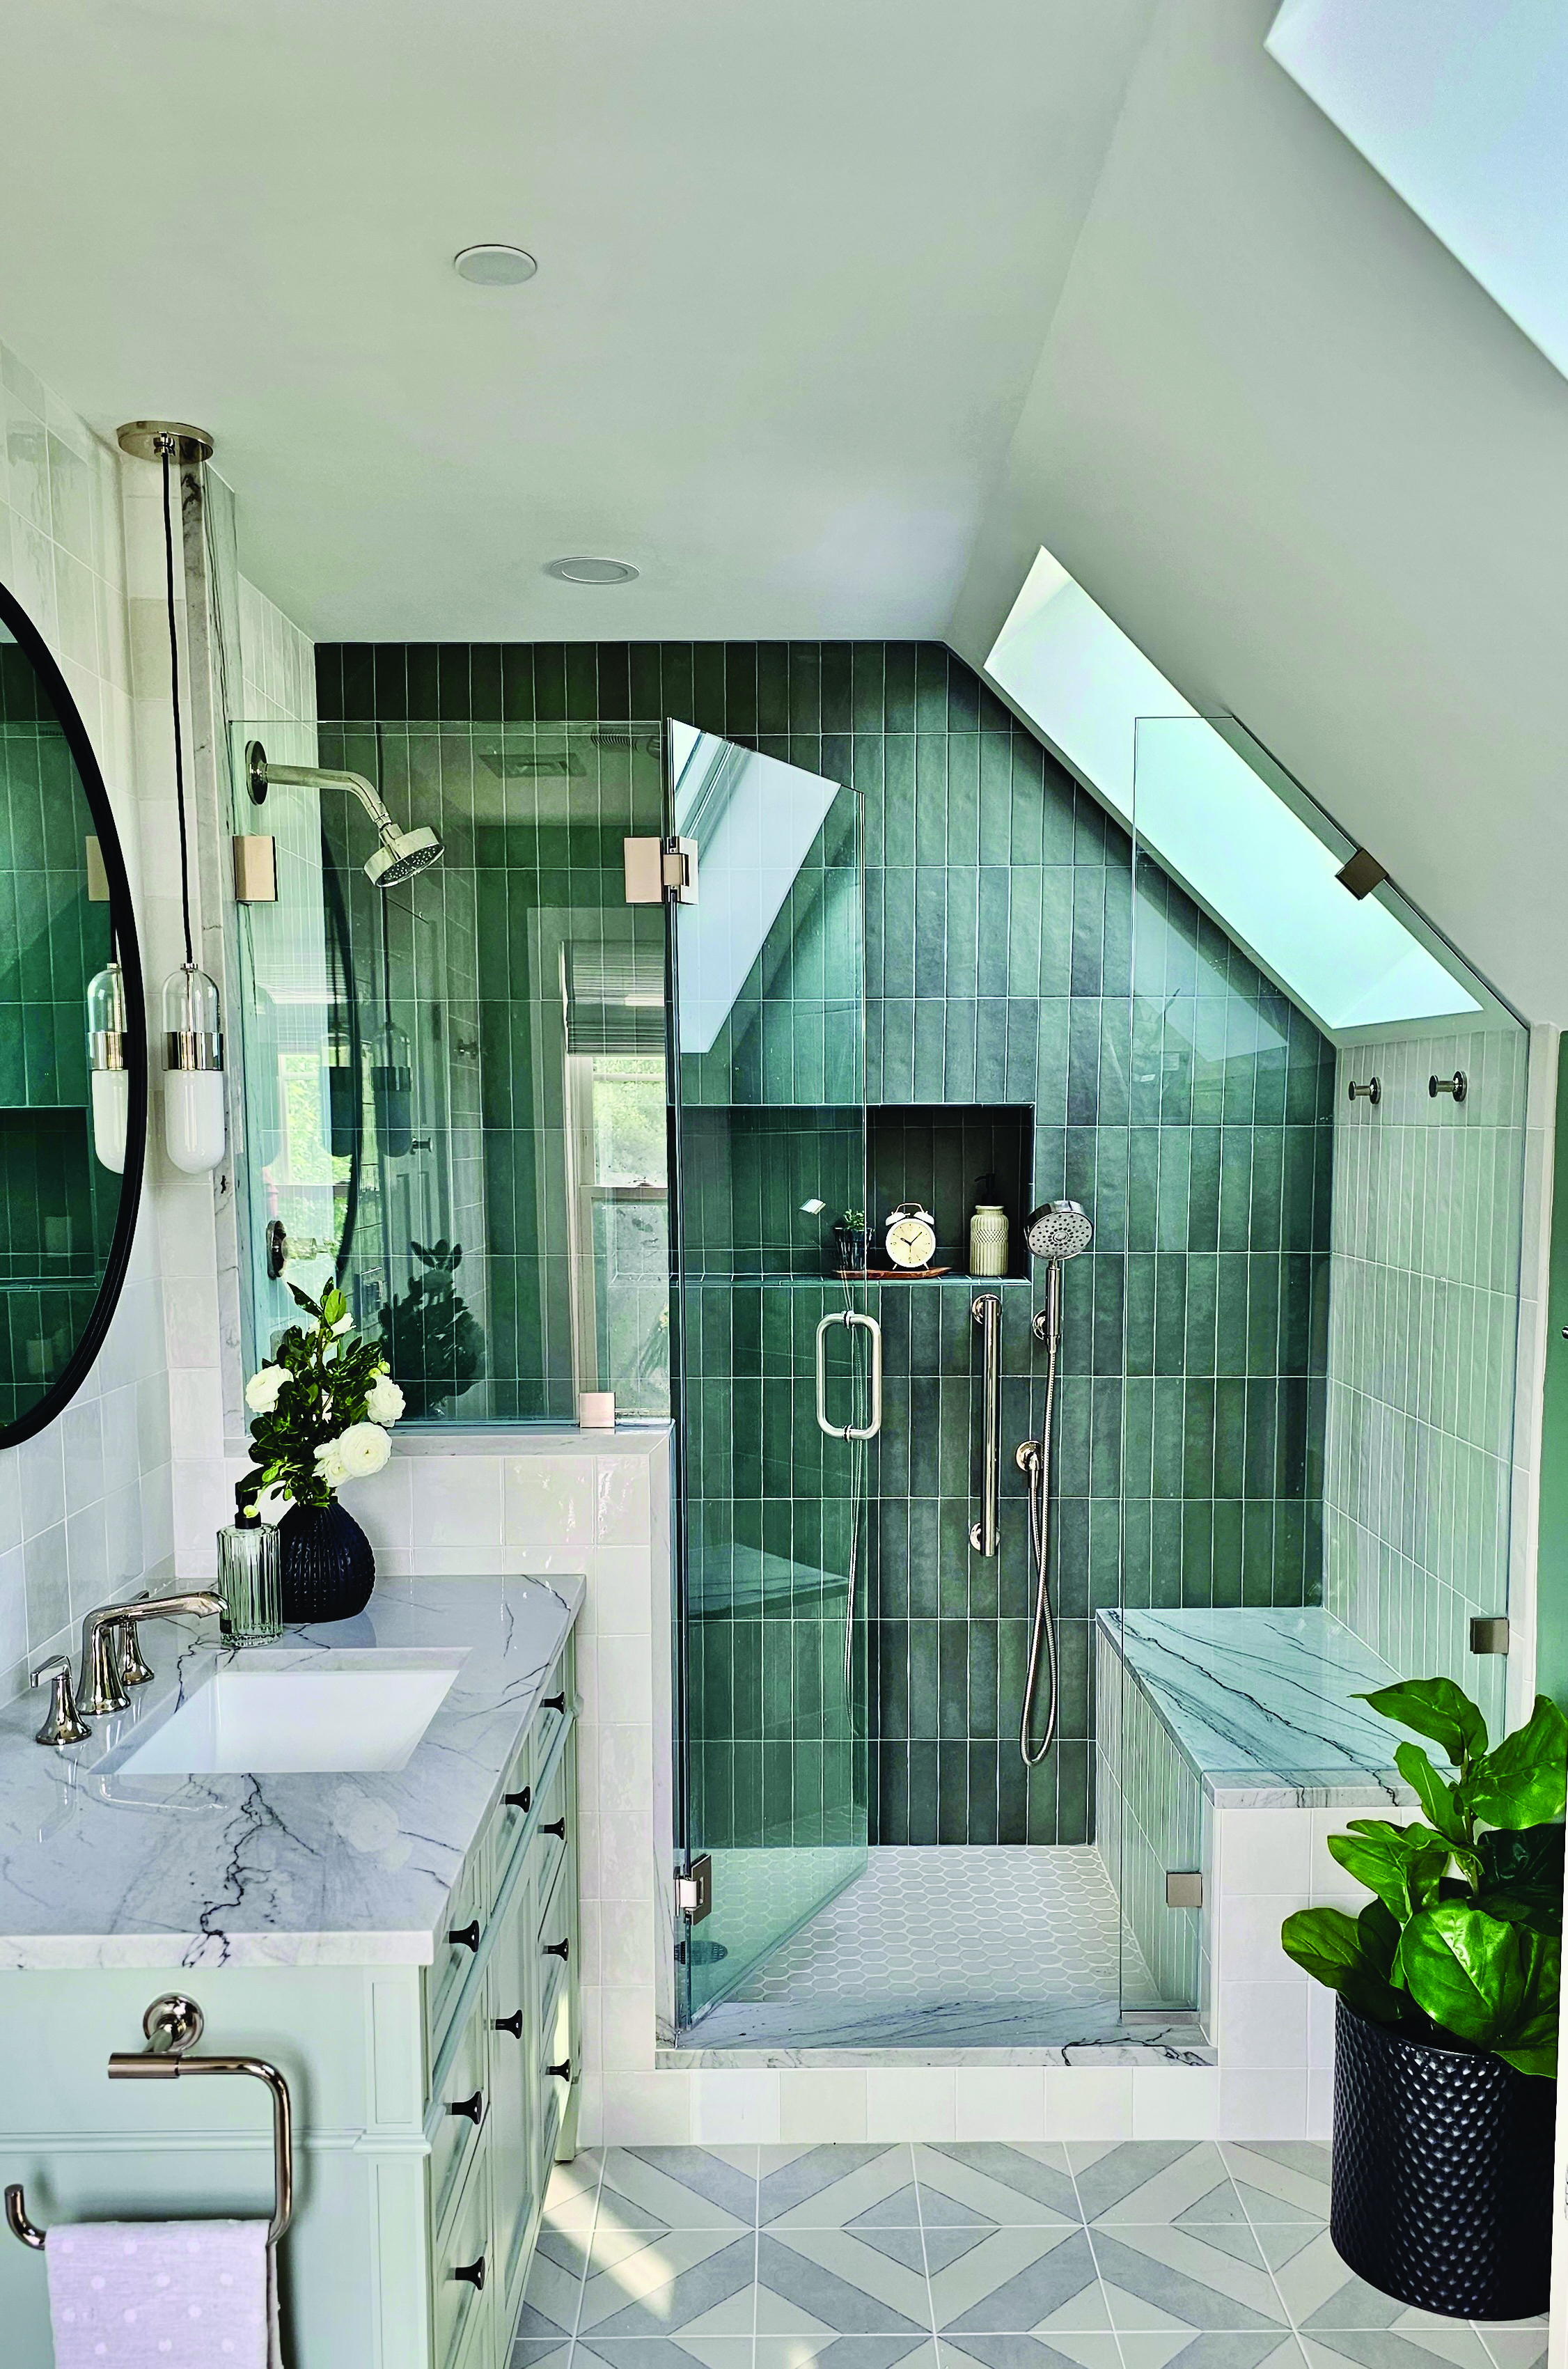 Home Design Ideas A Bathroom That